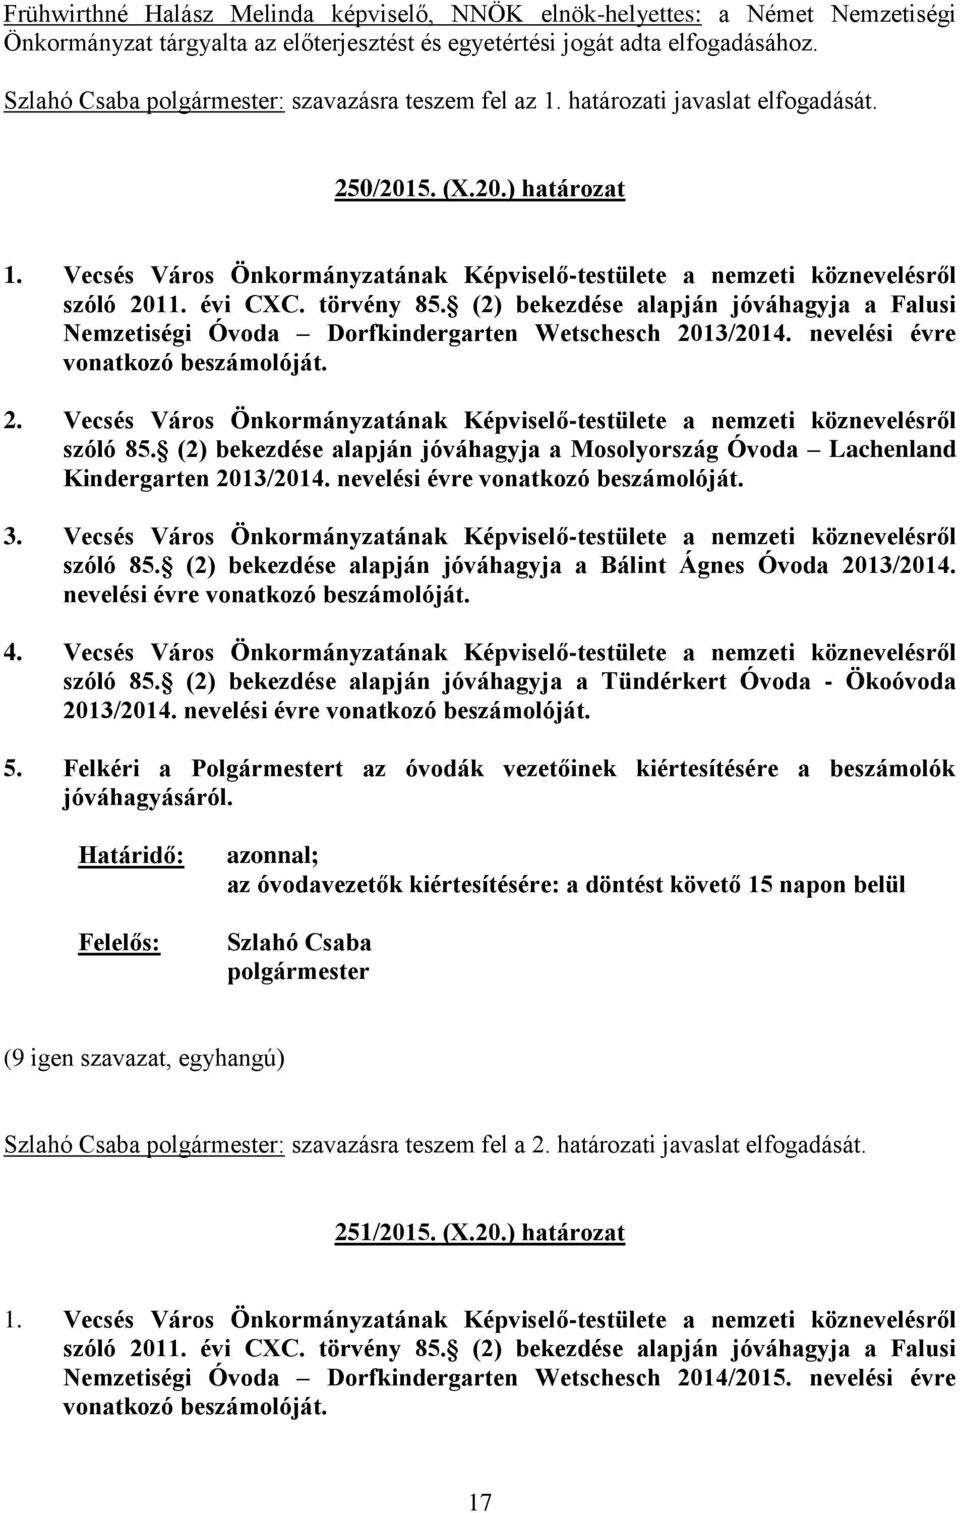 (2) bekezdése alapján jóváhagyja a Falusi Nemzetiségi Óvoda Dorfkindergarten Wetschesch 2013/2014. nevelési évre vonatkozó beszámolóját. 2. Vecsés Város Önkormányzatának Képviselő-testülete a nemzeti köznevelésről szóló 85.